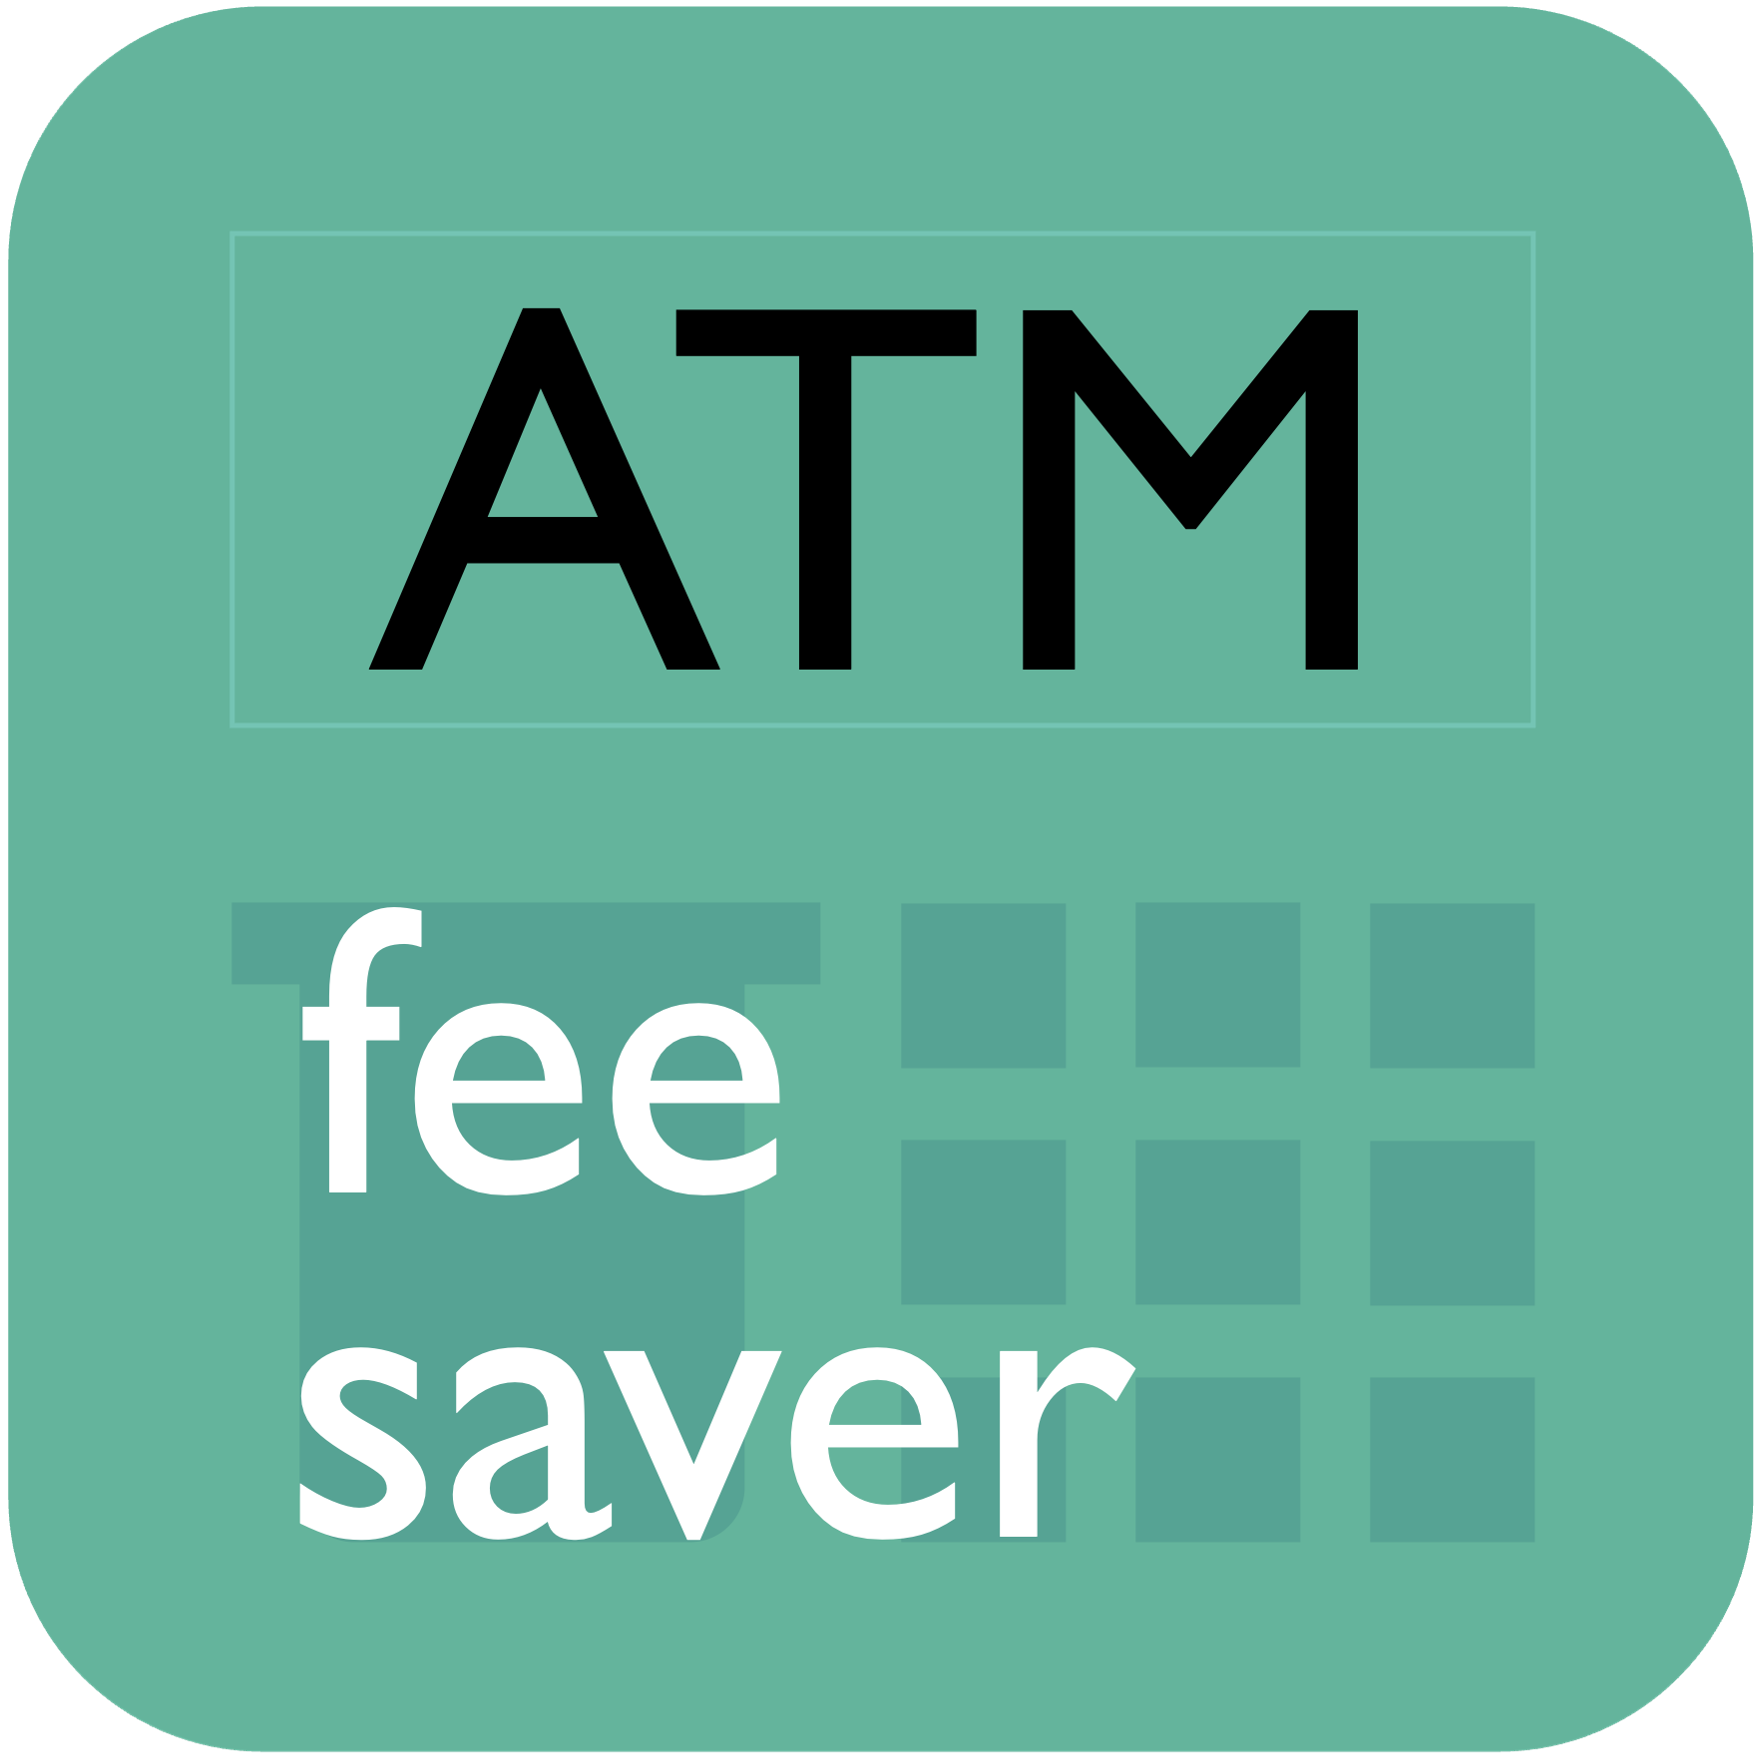 atm fee saver logo